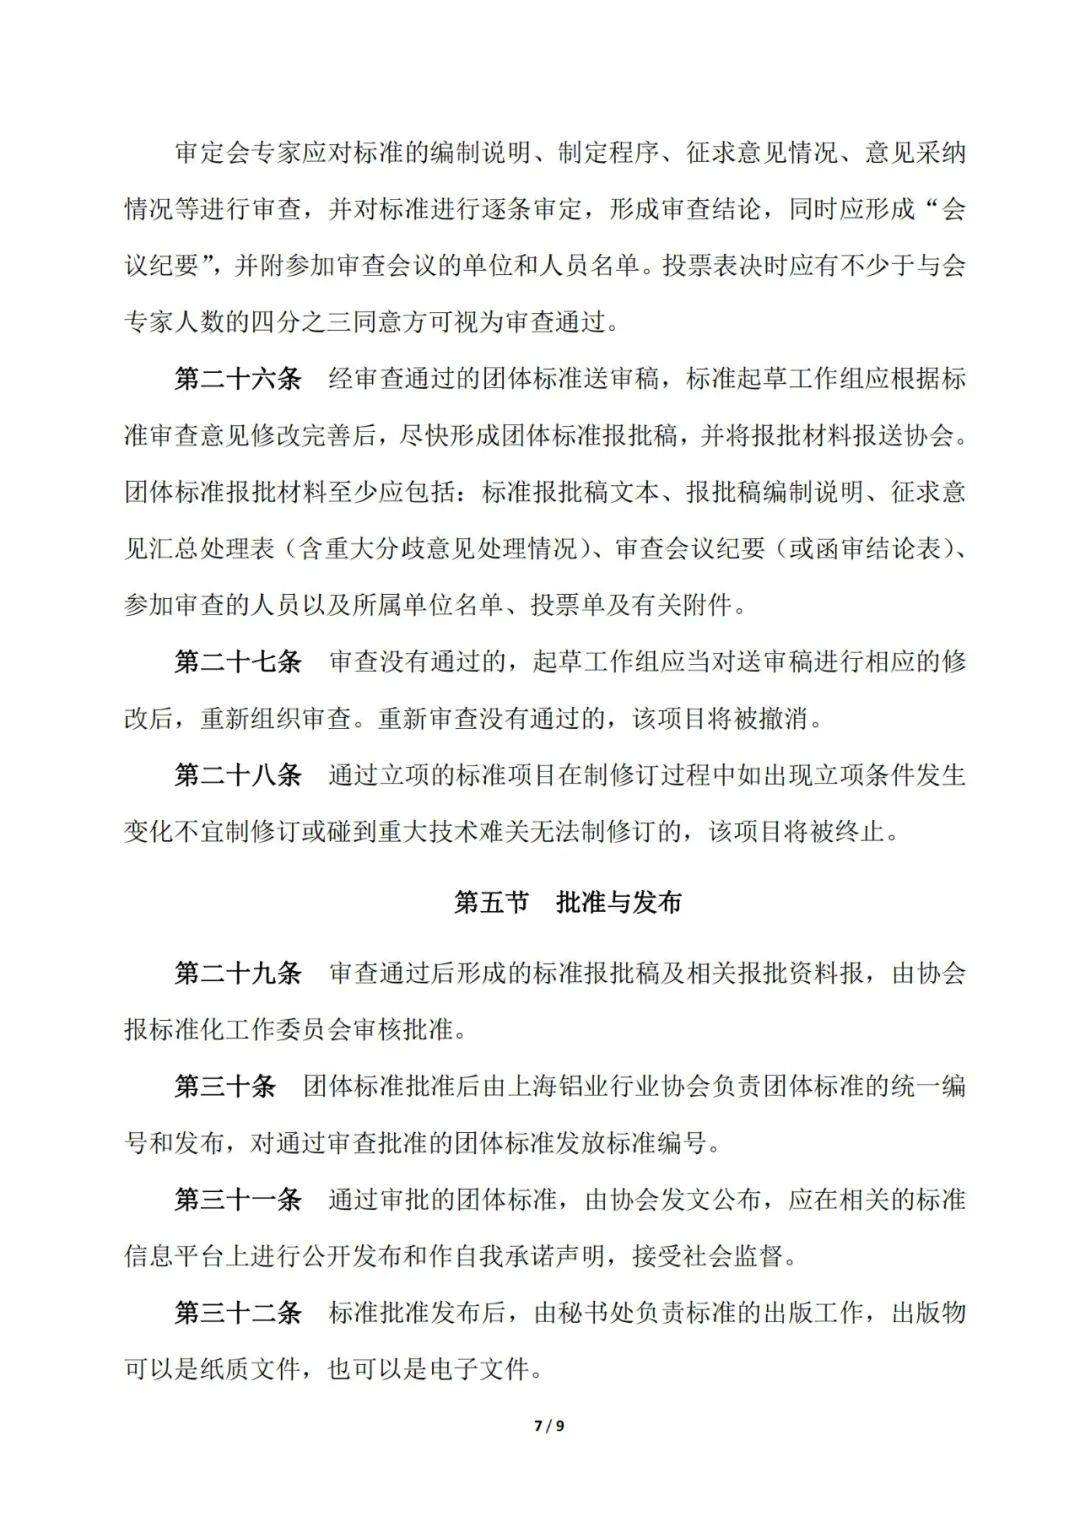 关于发布《上海铝业行业协会团体标准管理办法》的通知